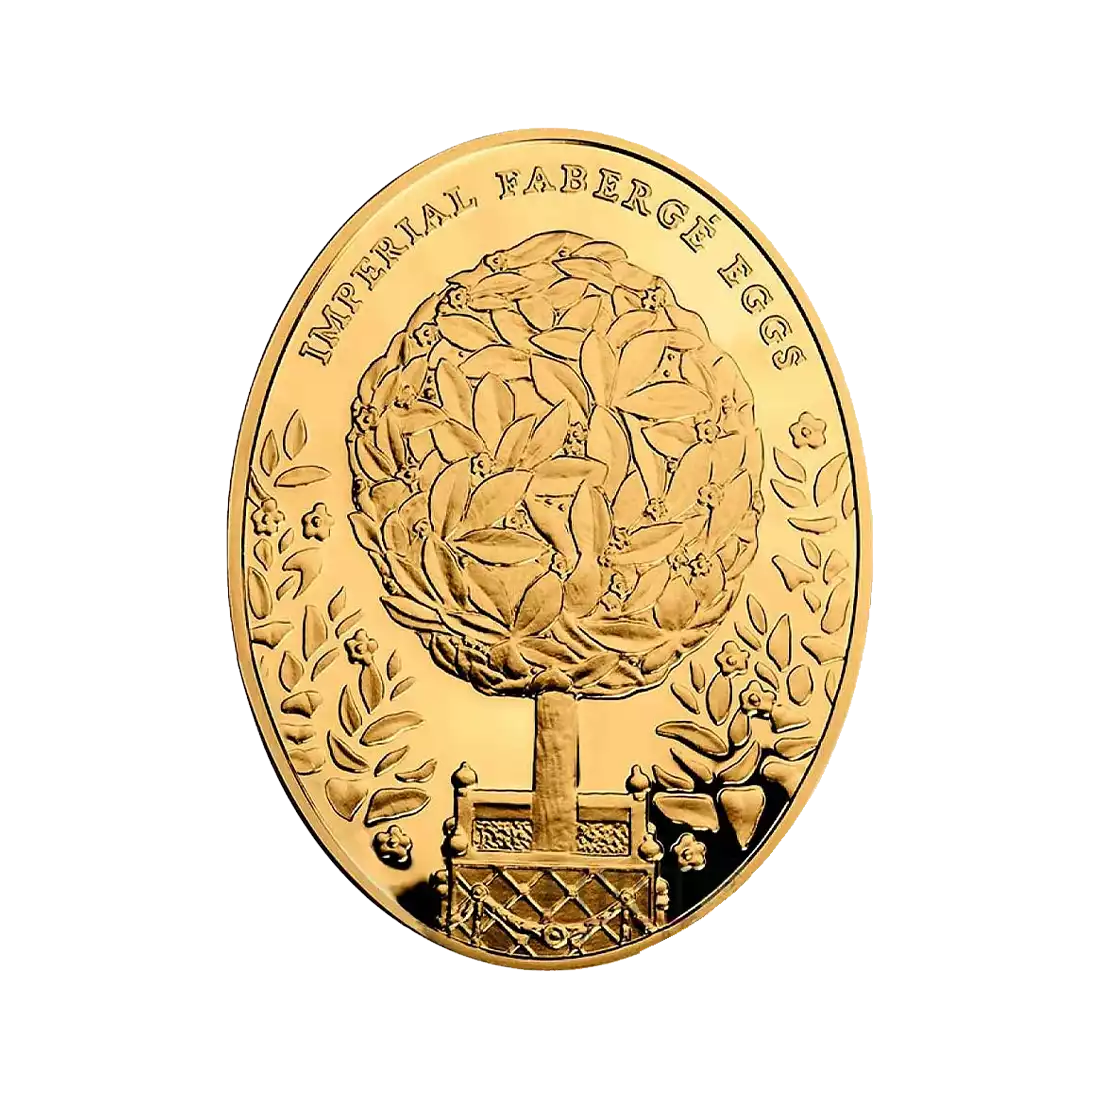 Jajko Faberge 3 uncje 2012 - złota moneta